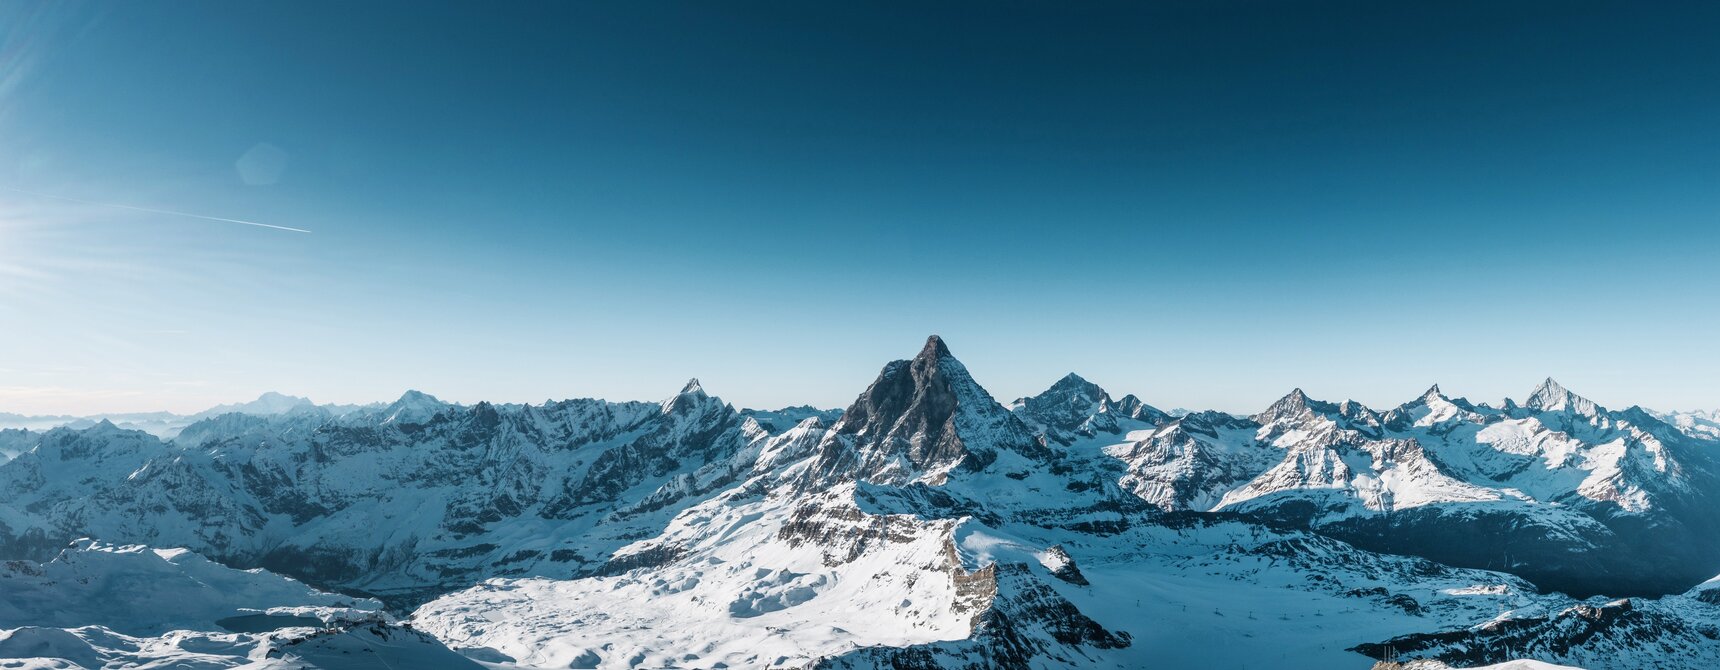 Le Matterhorn Alpine Crossing offre un paysage de glaciers à couper le souffle et une vue sur plusieurs sommets de plus de 4000 mètres.  | © Gabriel Perren